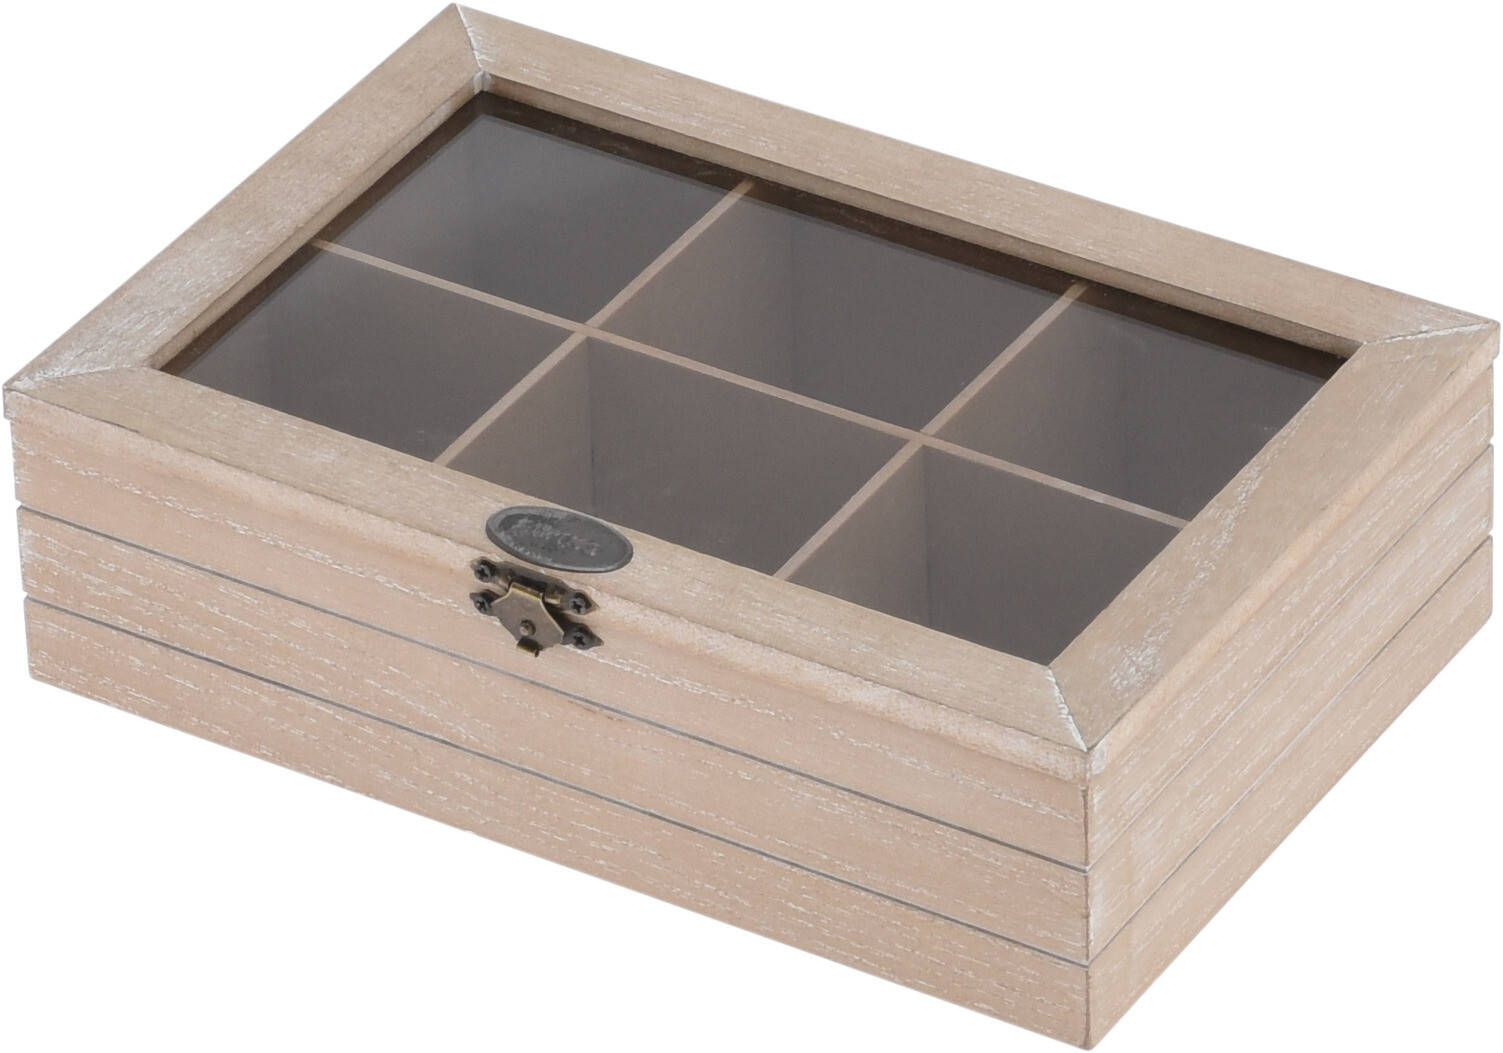 Krabička na čaj, dřevěná, 6 přihrádek, 24 x 16 cm - EMAKO.CZ s.r.o.